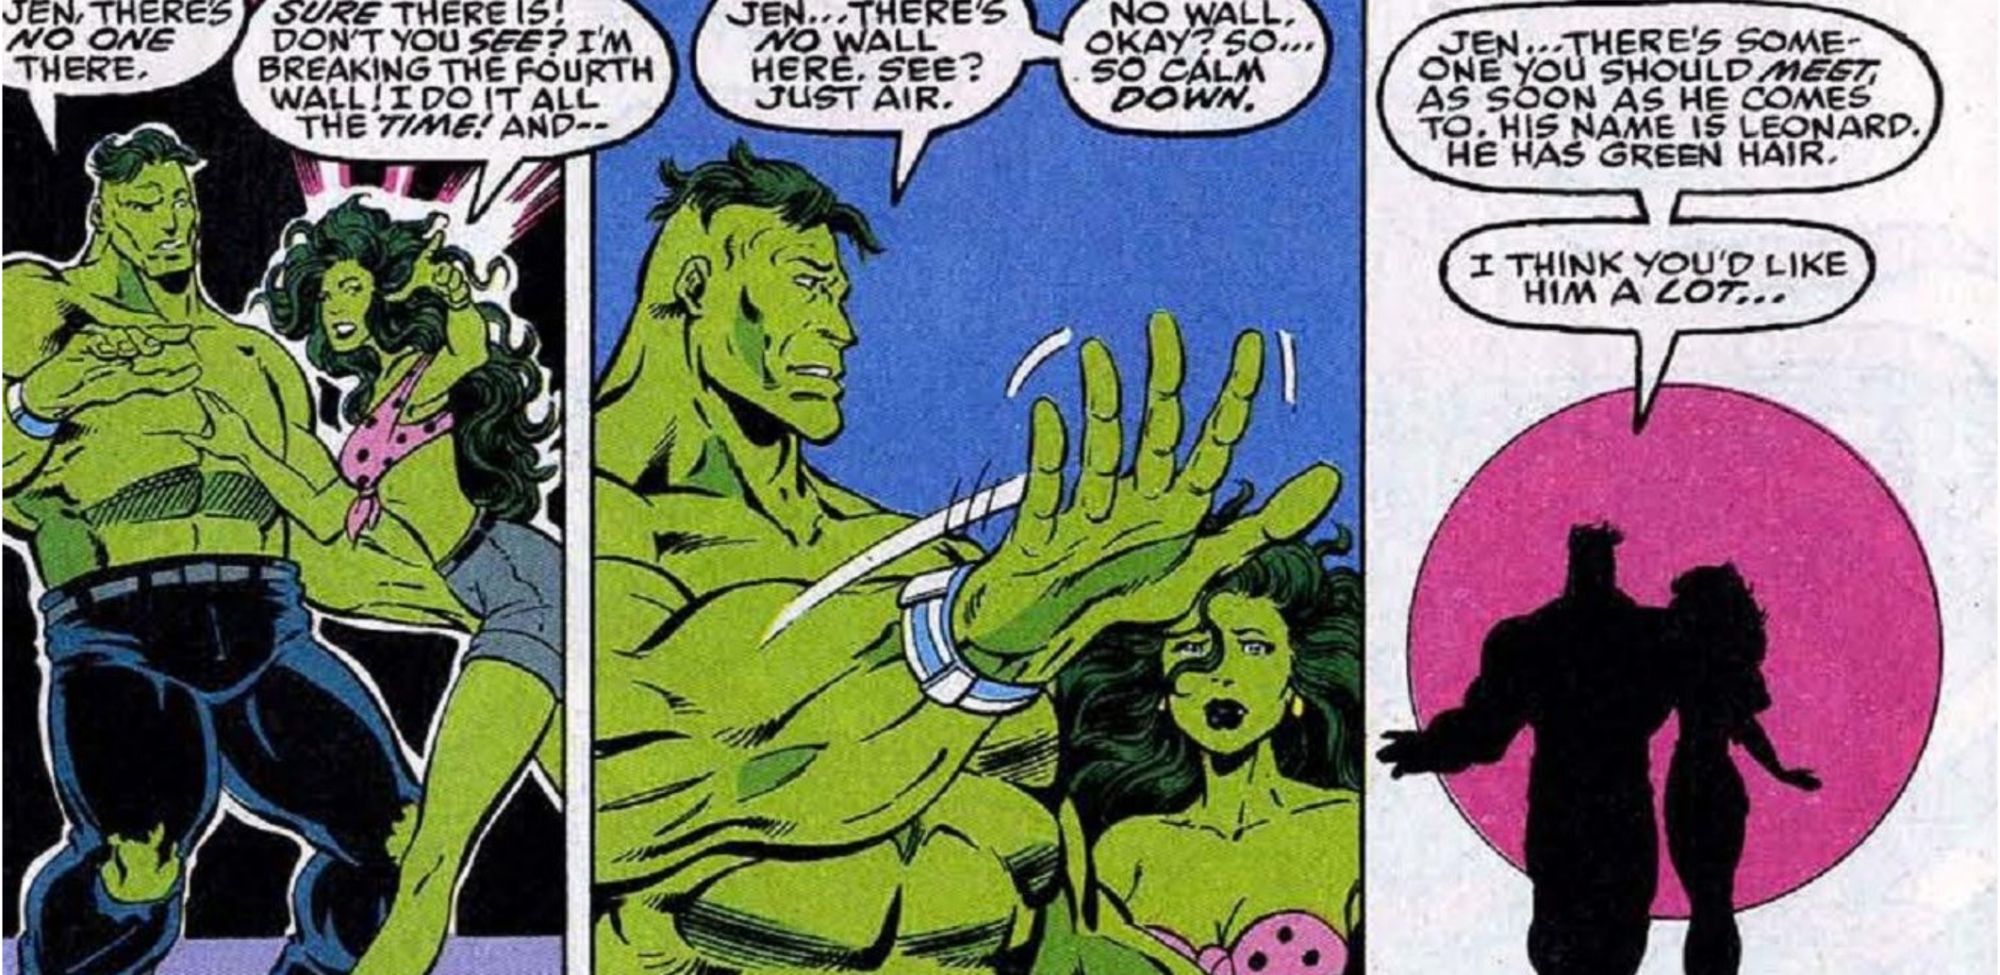 Professor Hulk and She-Hulk debate the fourth wall in Marvel Comics.